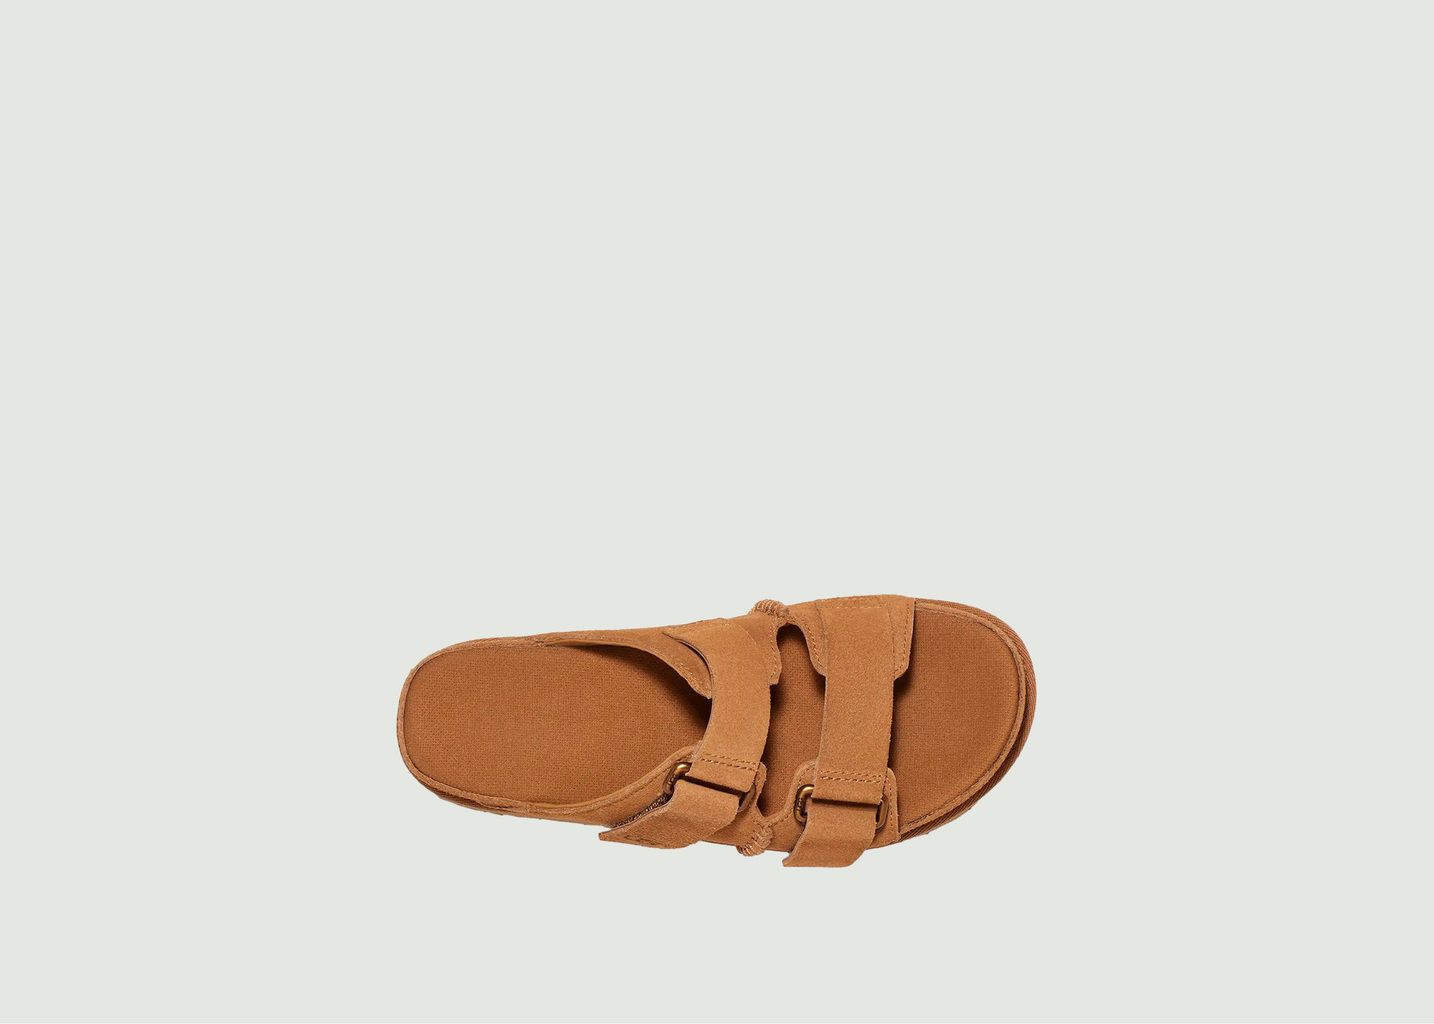 Sandales en daim - Ugg